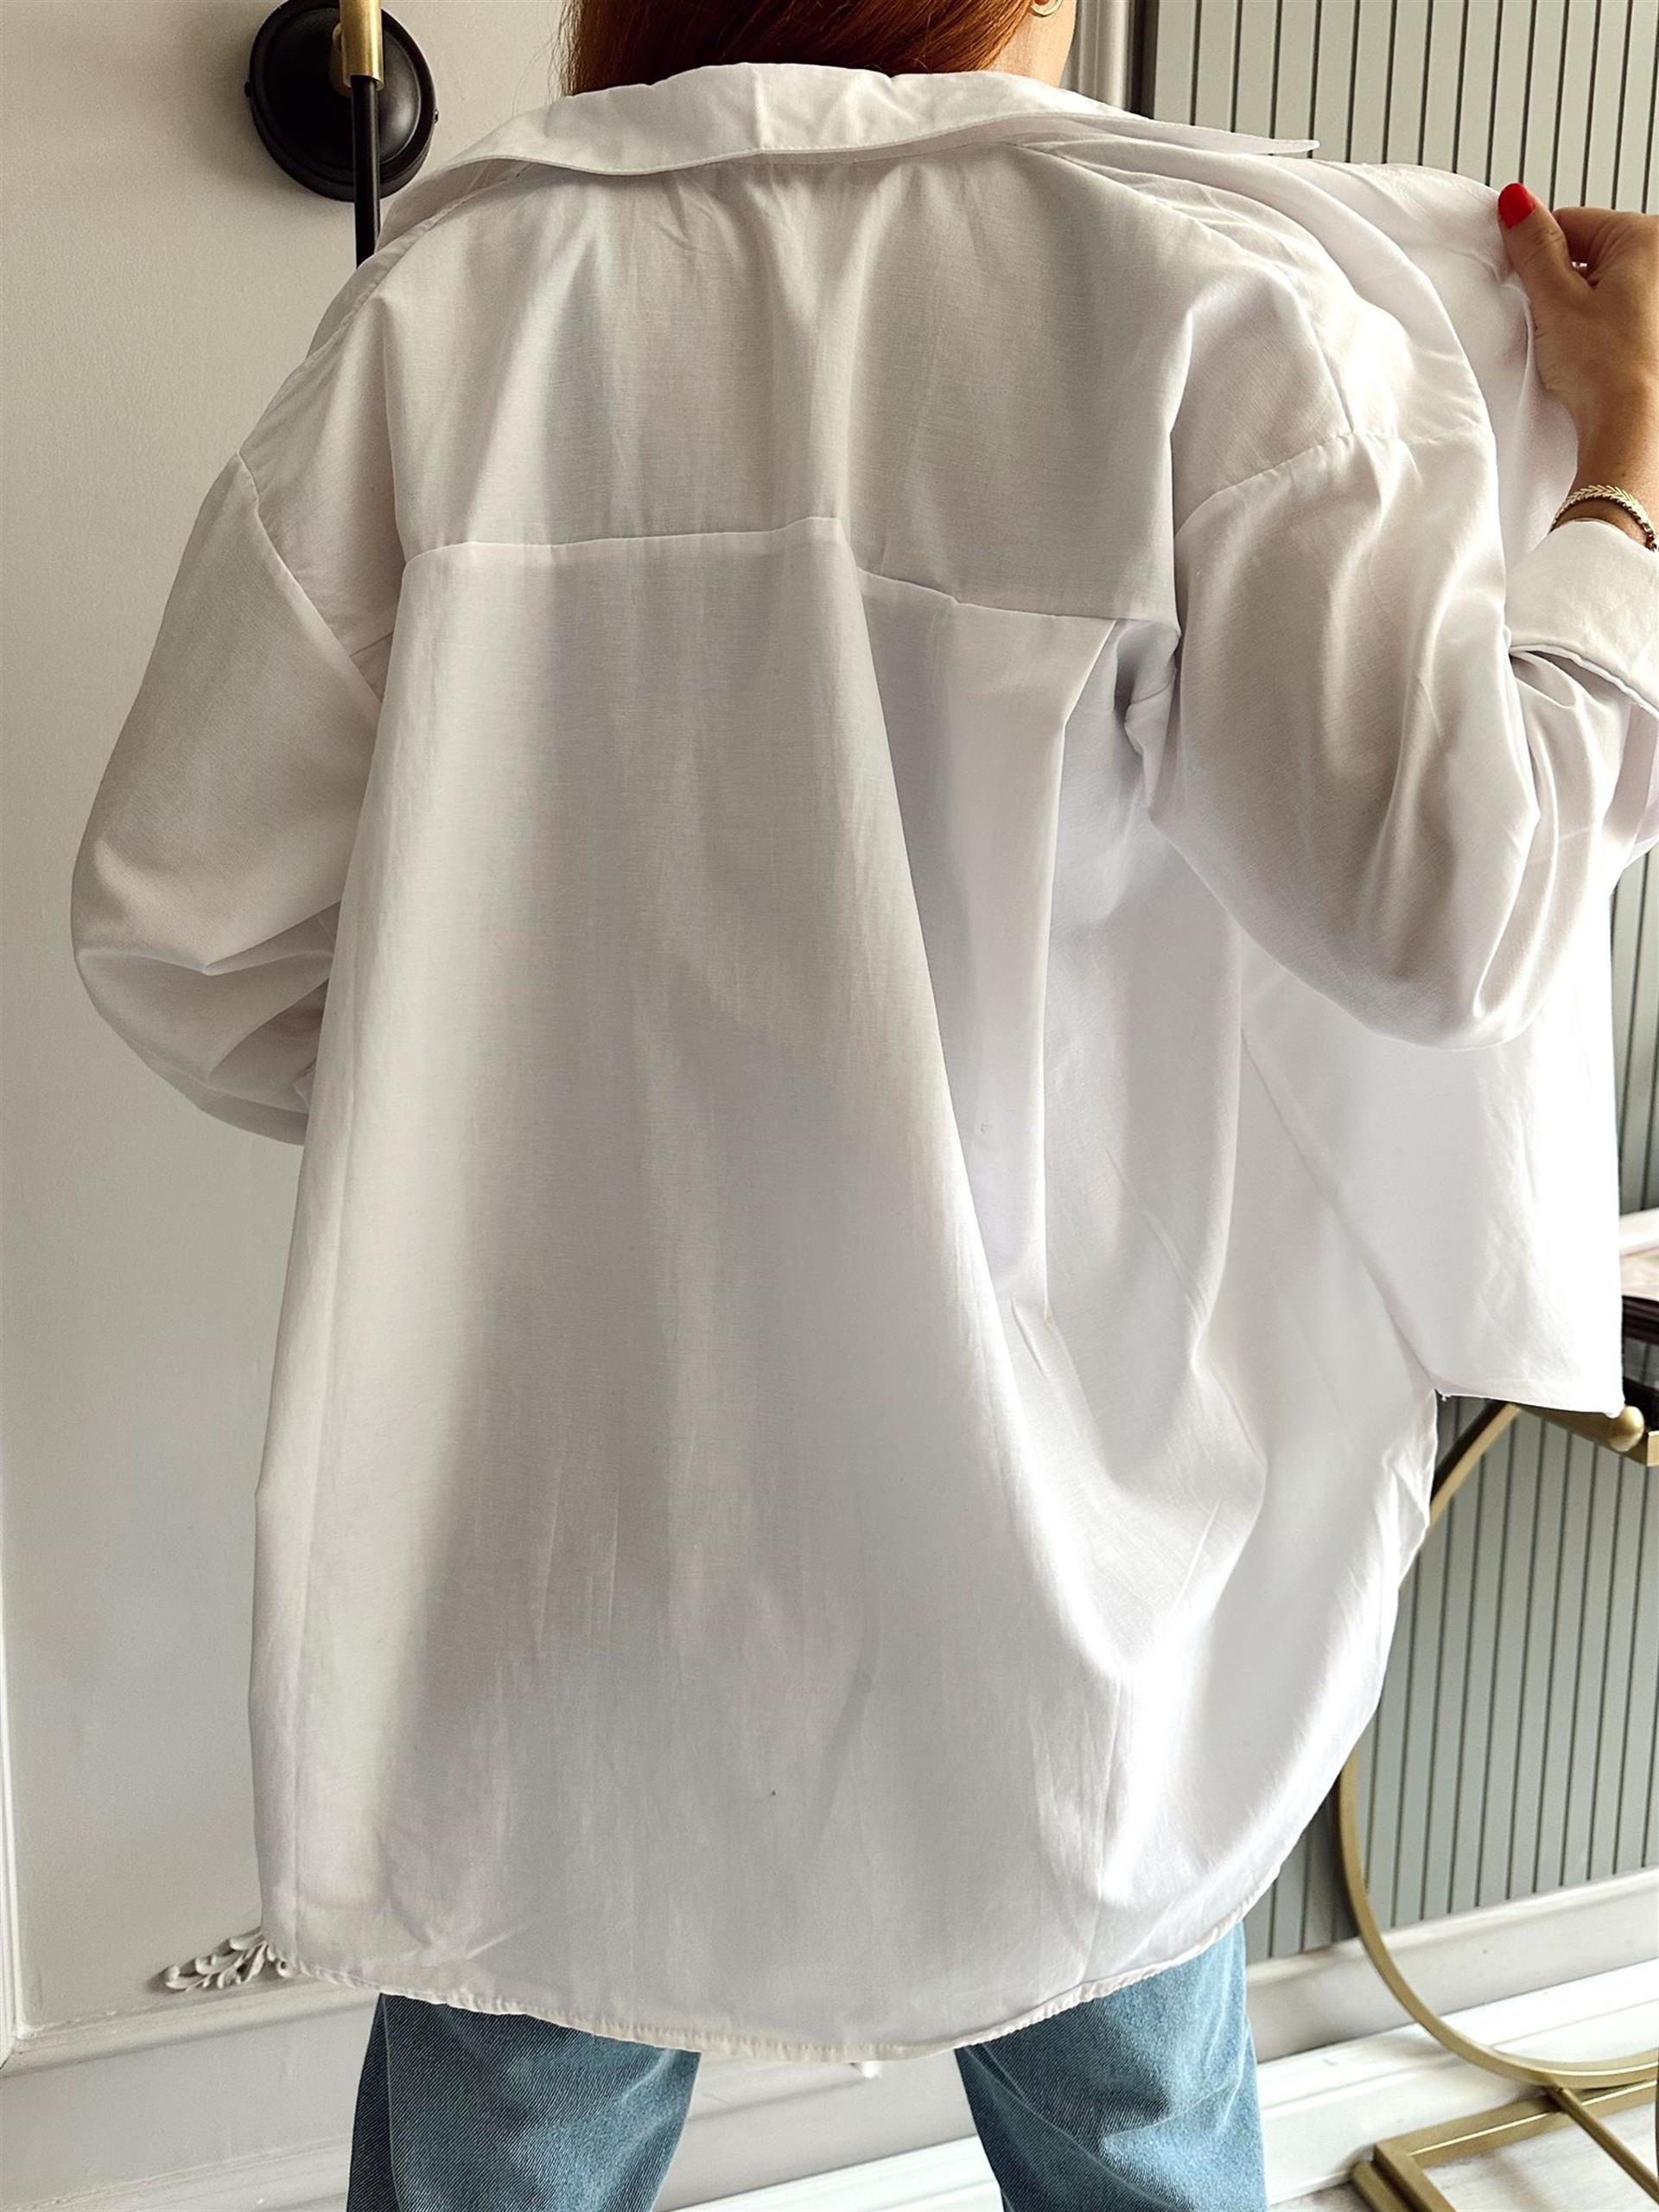 Beyaz Önü Kısa Arkası Uzun Gömlek I Chamakh Butik Online Alışveriş